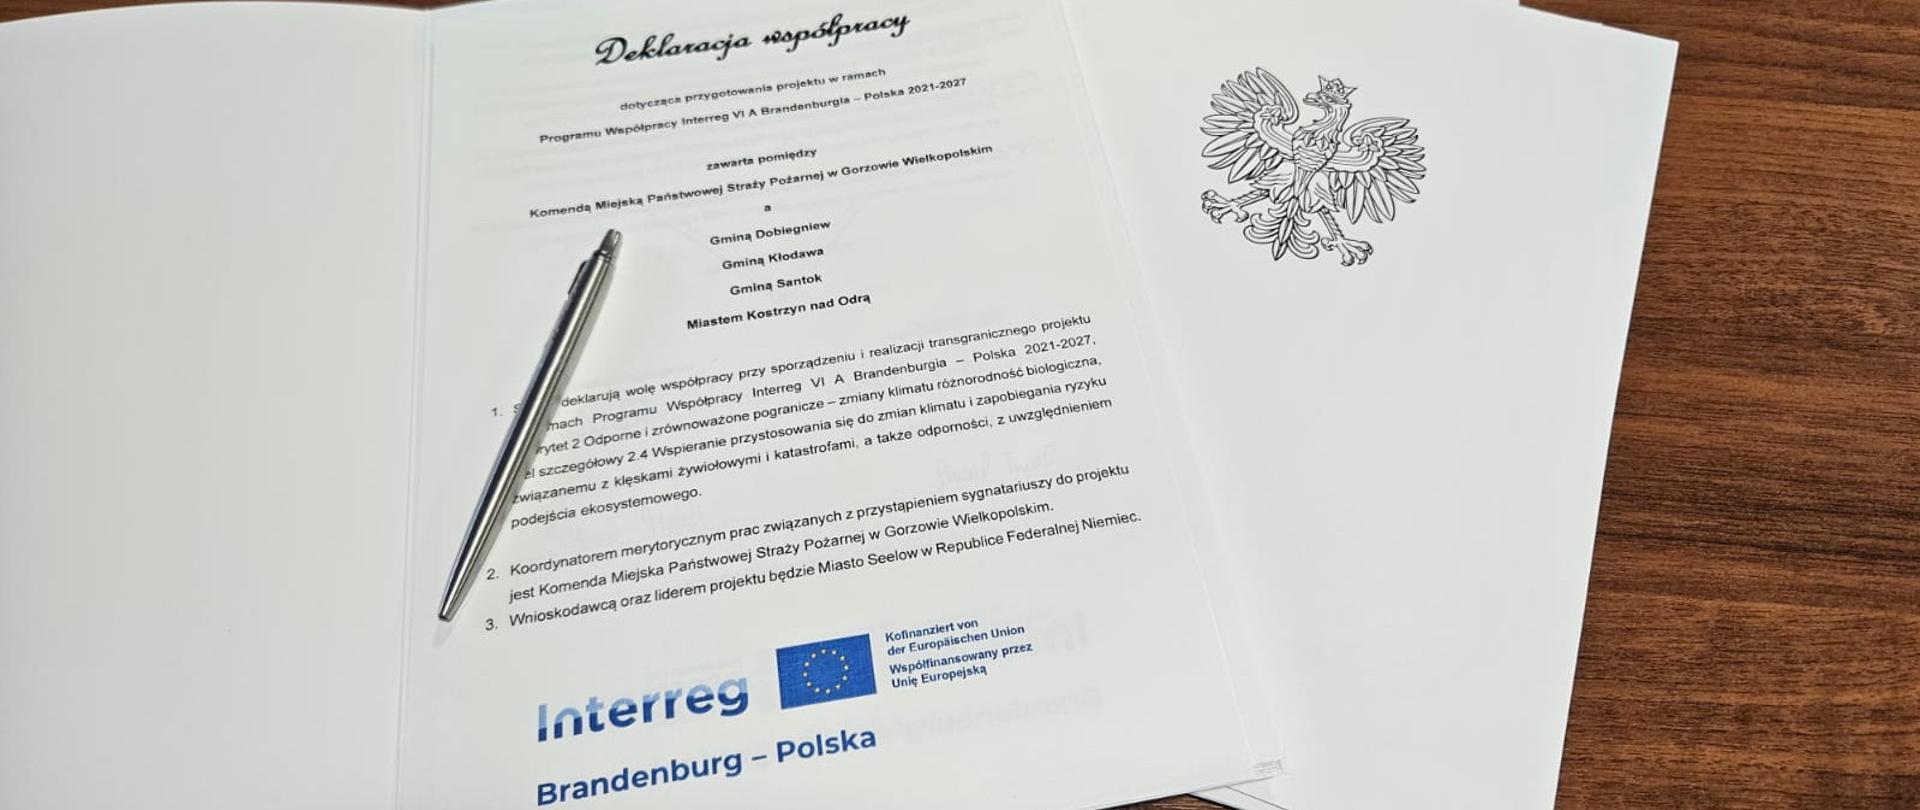 Podpisanie deklaracji współpracy - Interreg